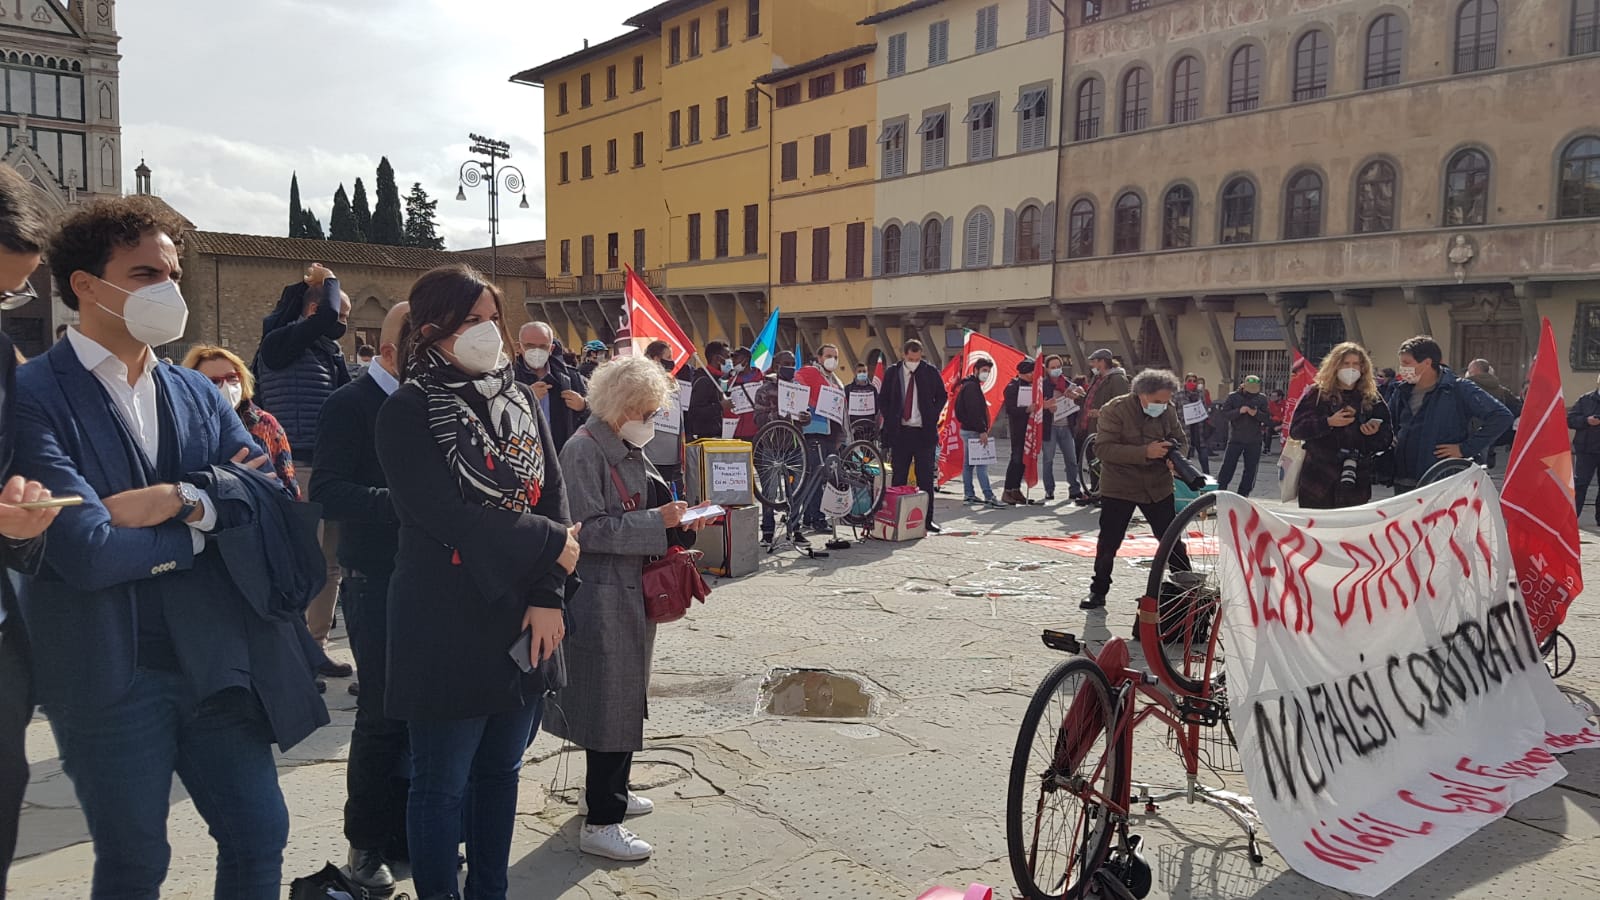 Rider oggi in piazza, l’assessora Alessandra Nardini: “Battaglia per la dignità del lavoro”